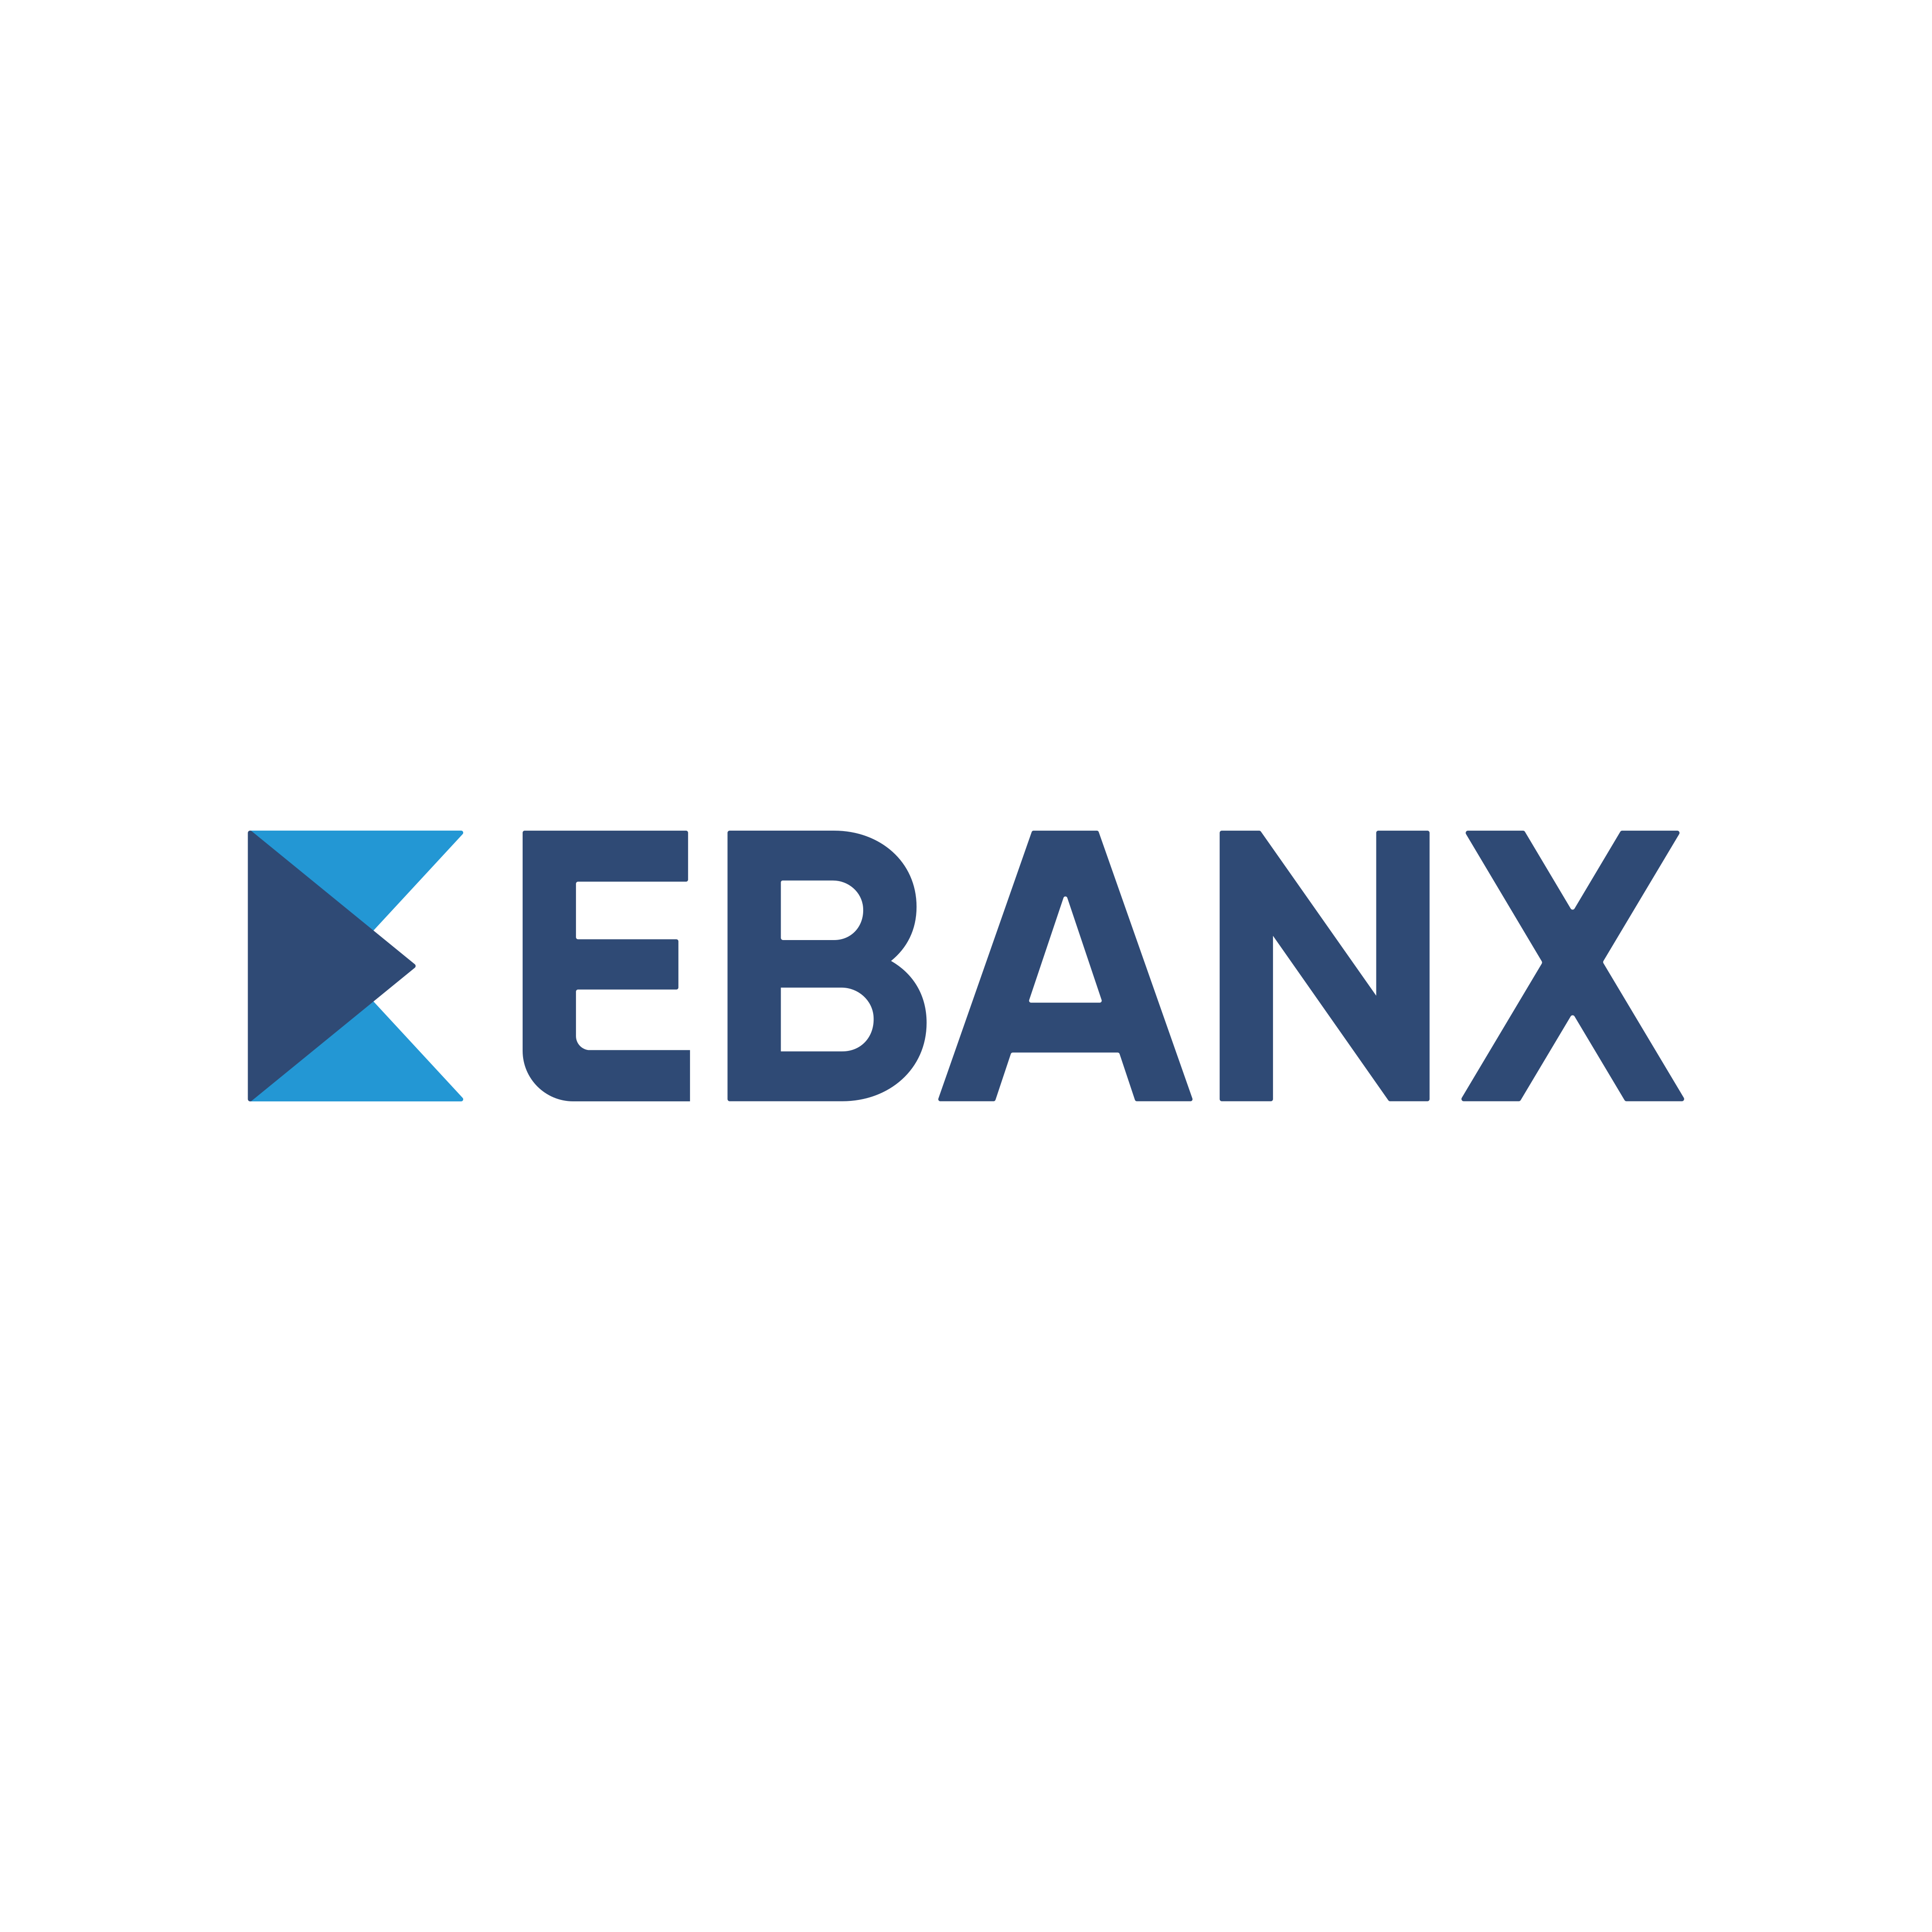 EBANX Logo PNG.